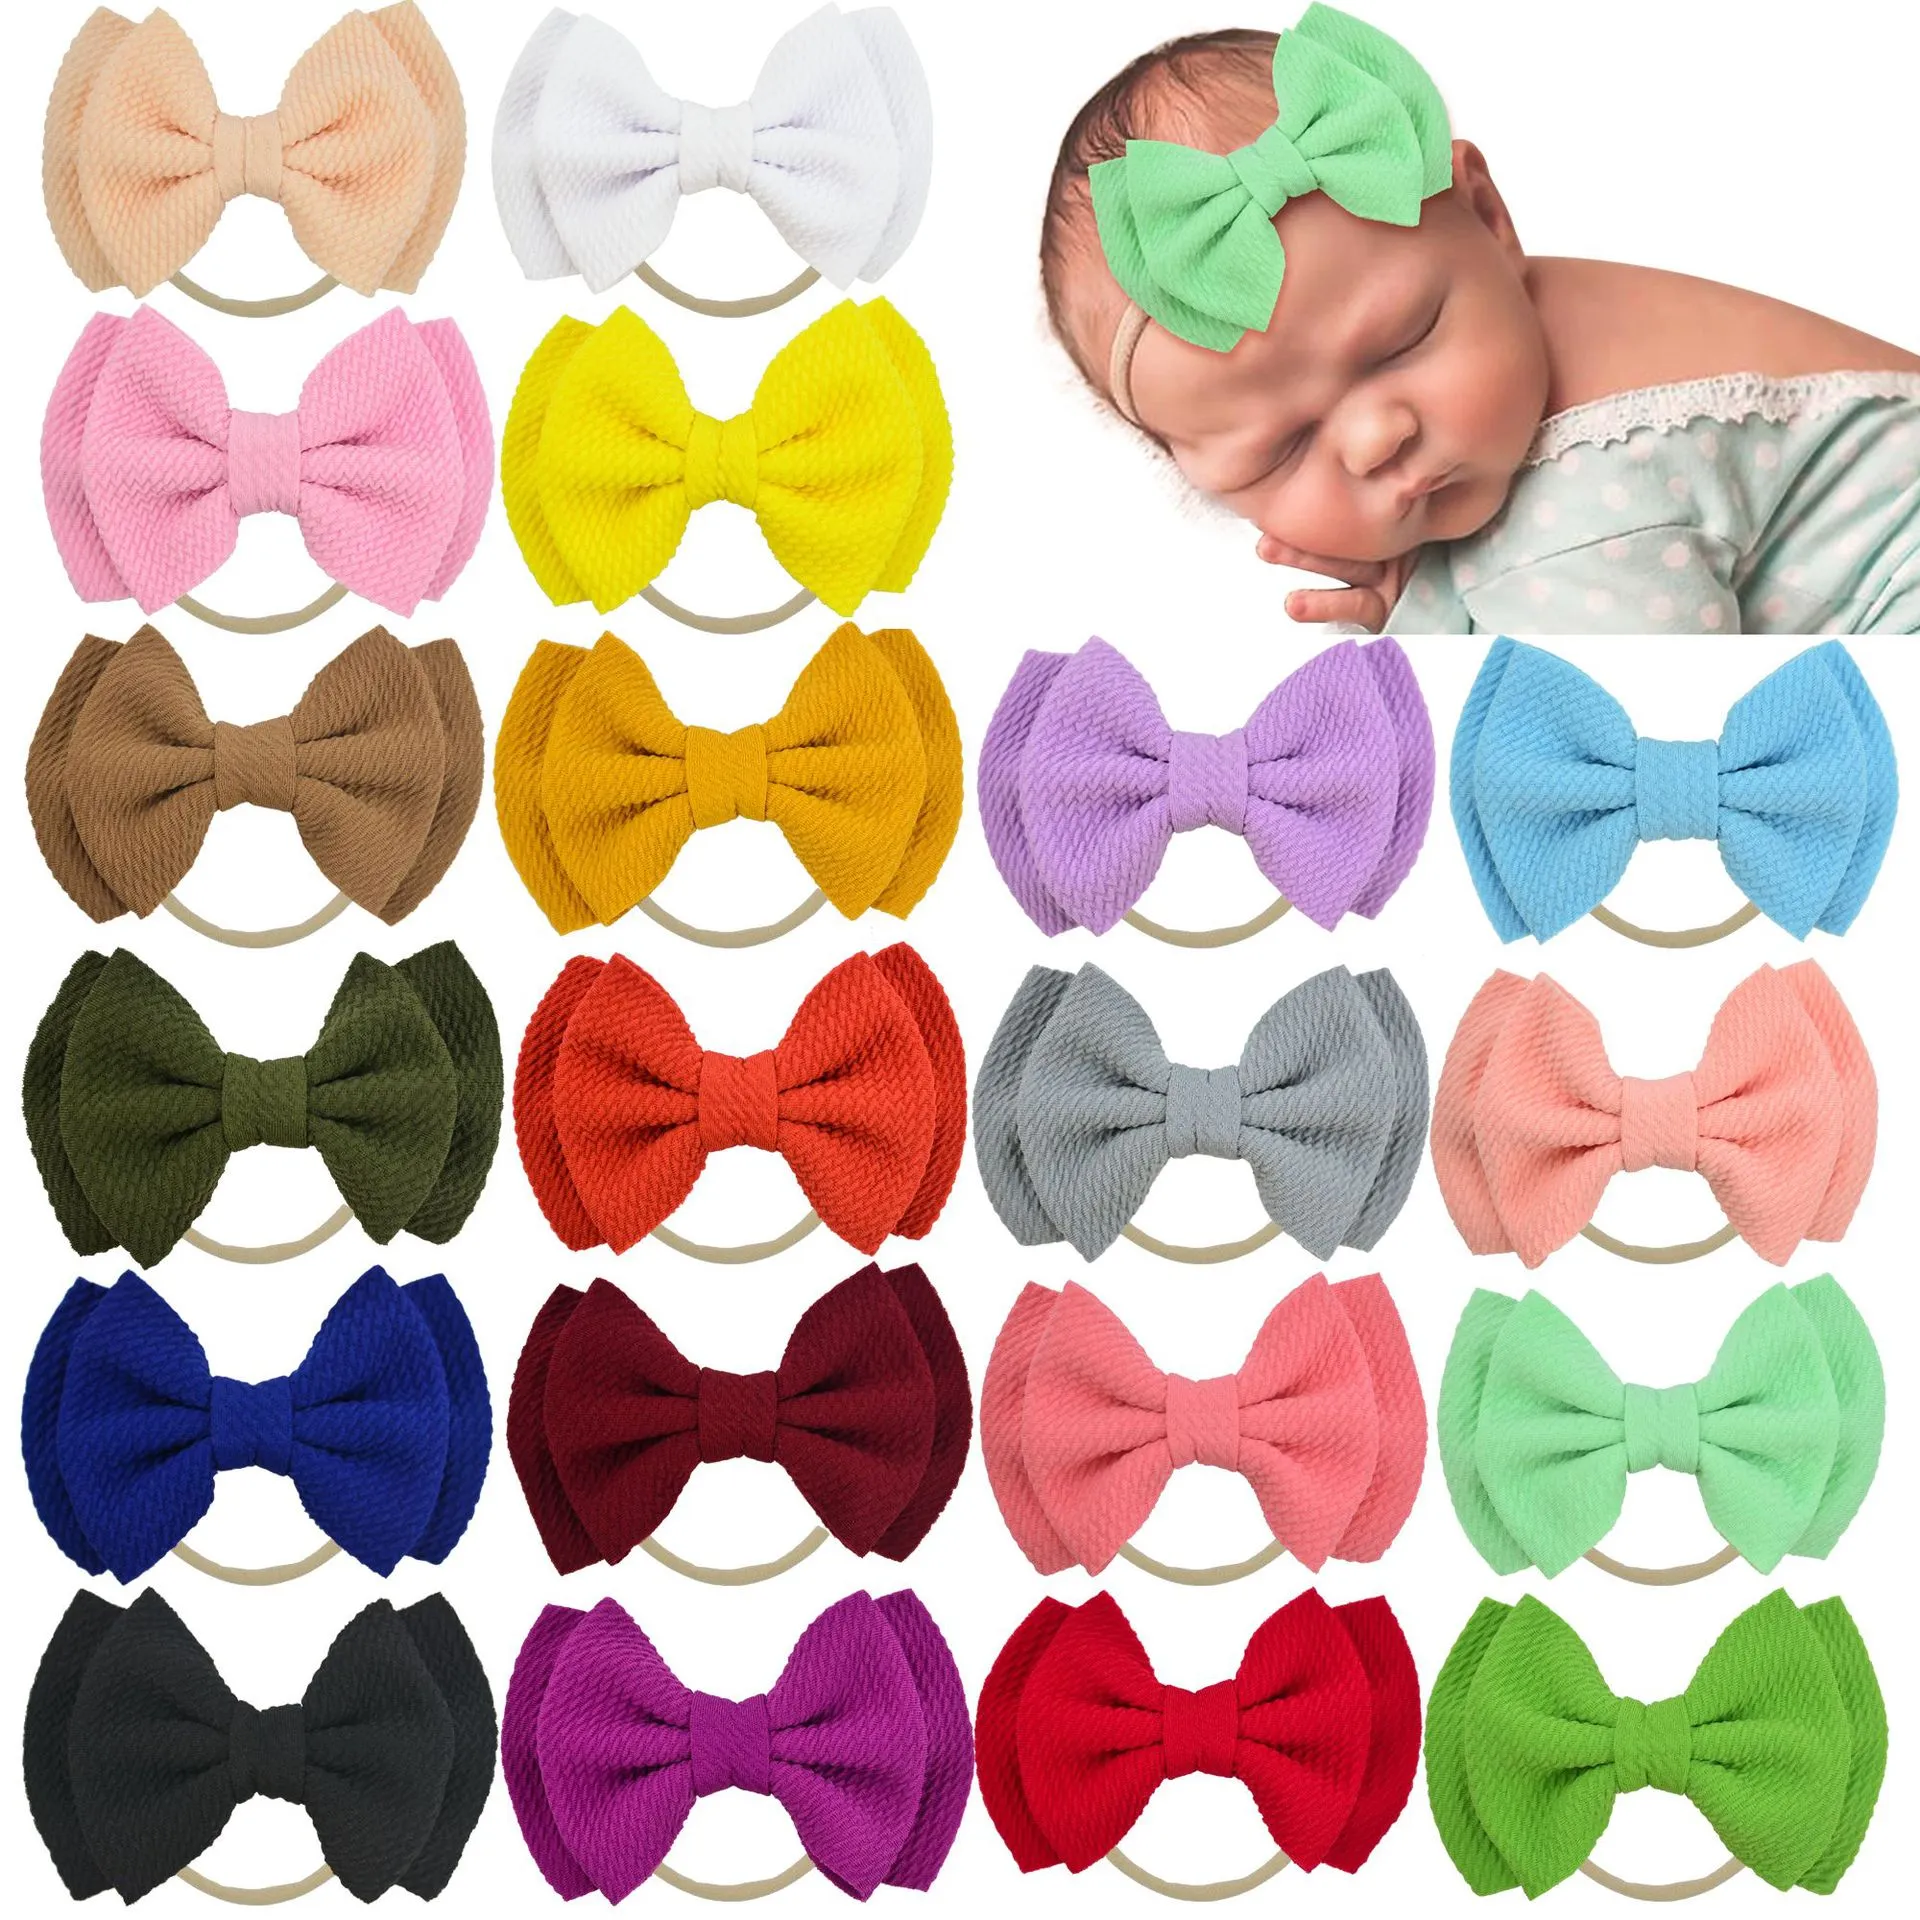 20色結び弓ベビーヘッドバンド幼児ヘッドラップキッズフラワーターバン帽子の赤ちゃんキャップ弾性ヘアアクセサリー2021